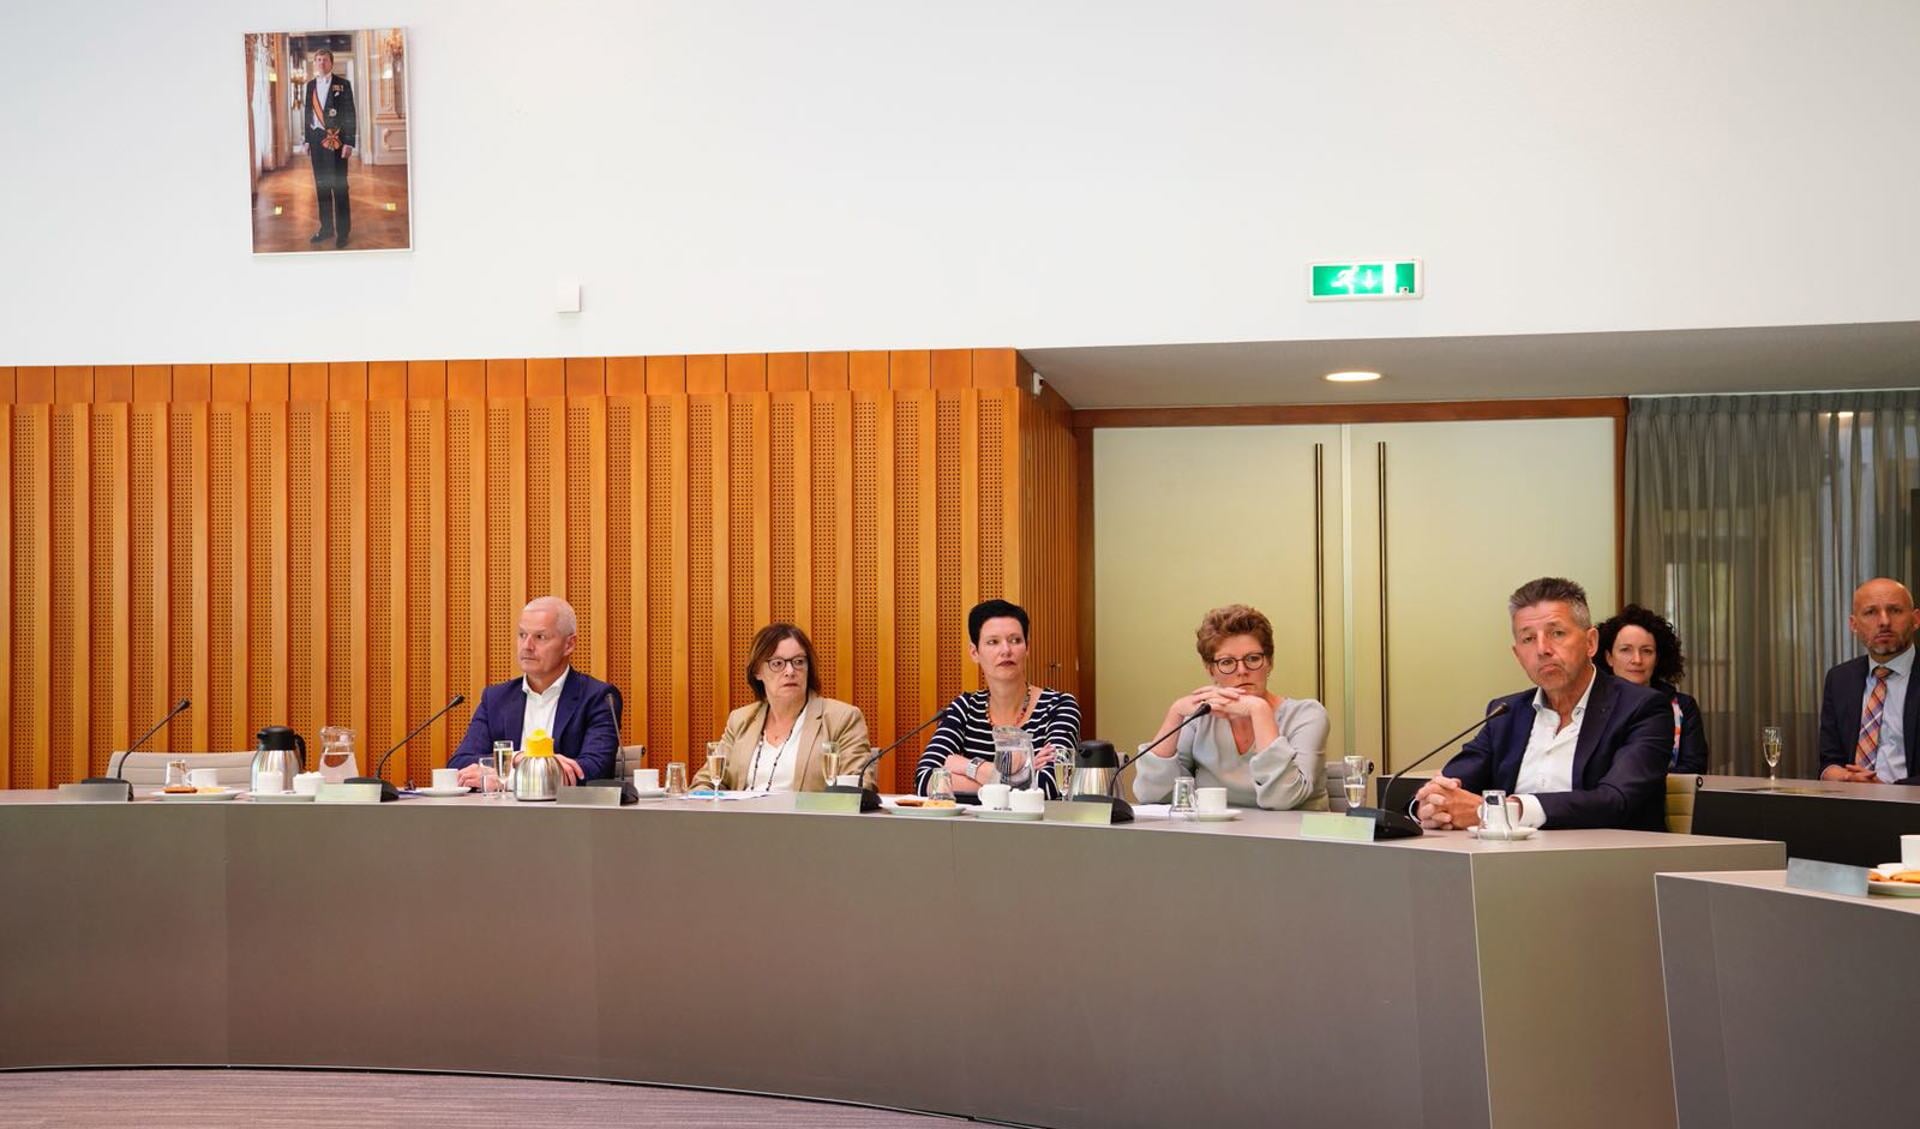 De nieuwe wethouders van de gemeente Laarbeek. Vlnr. Joan Briels, Ria van der Zanden, Monika Slaets, Greet Buter en Tonny Meulensteen 